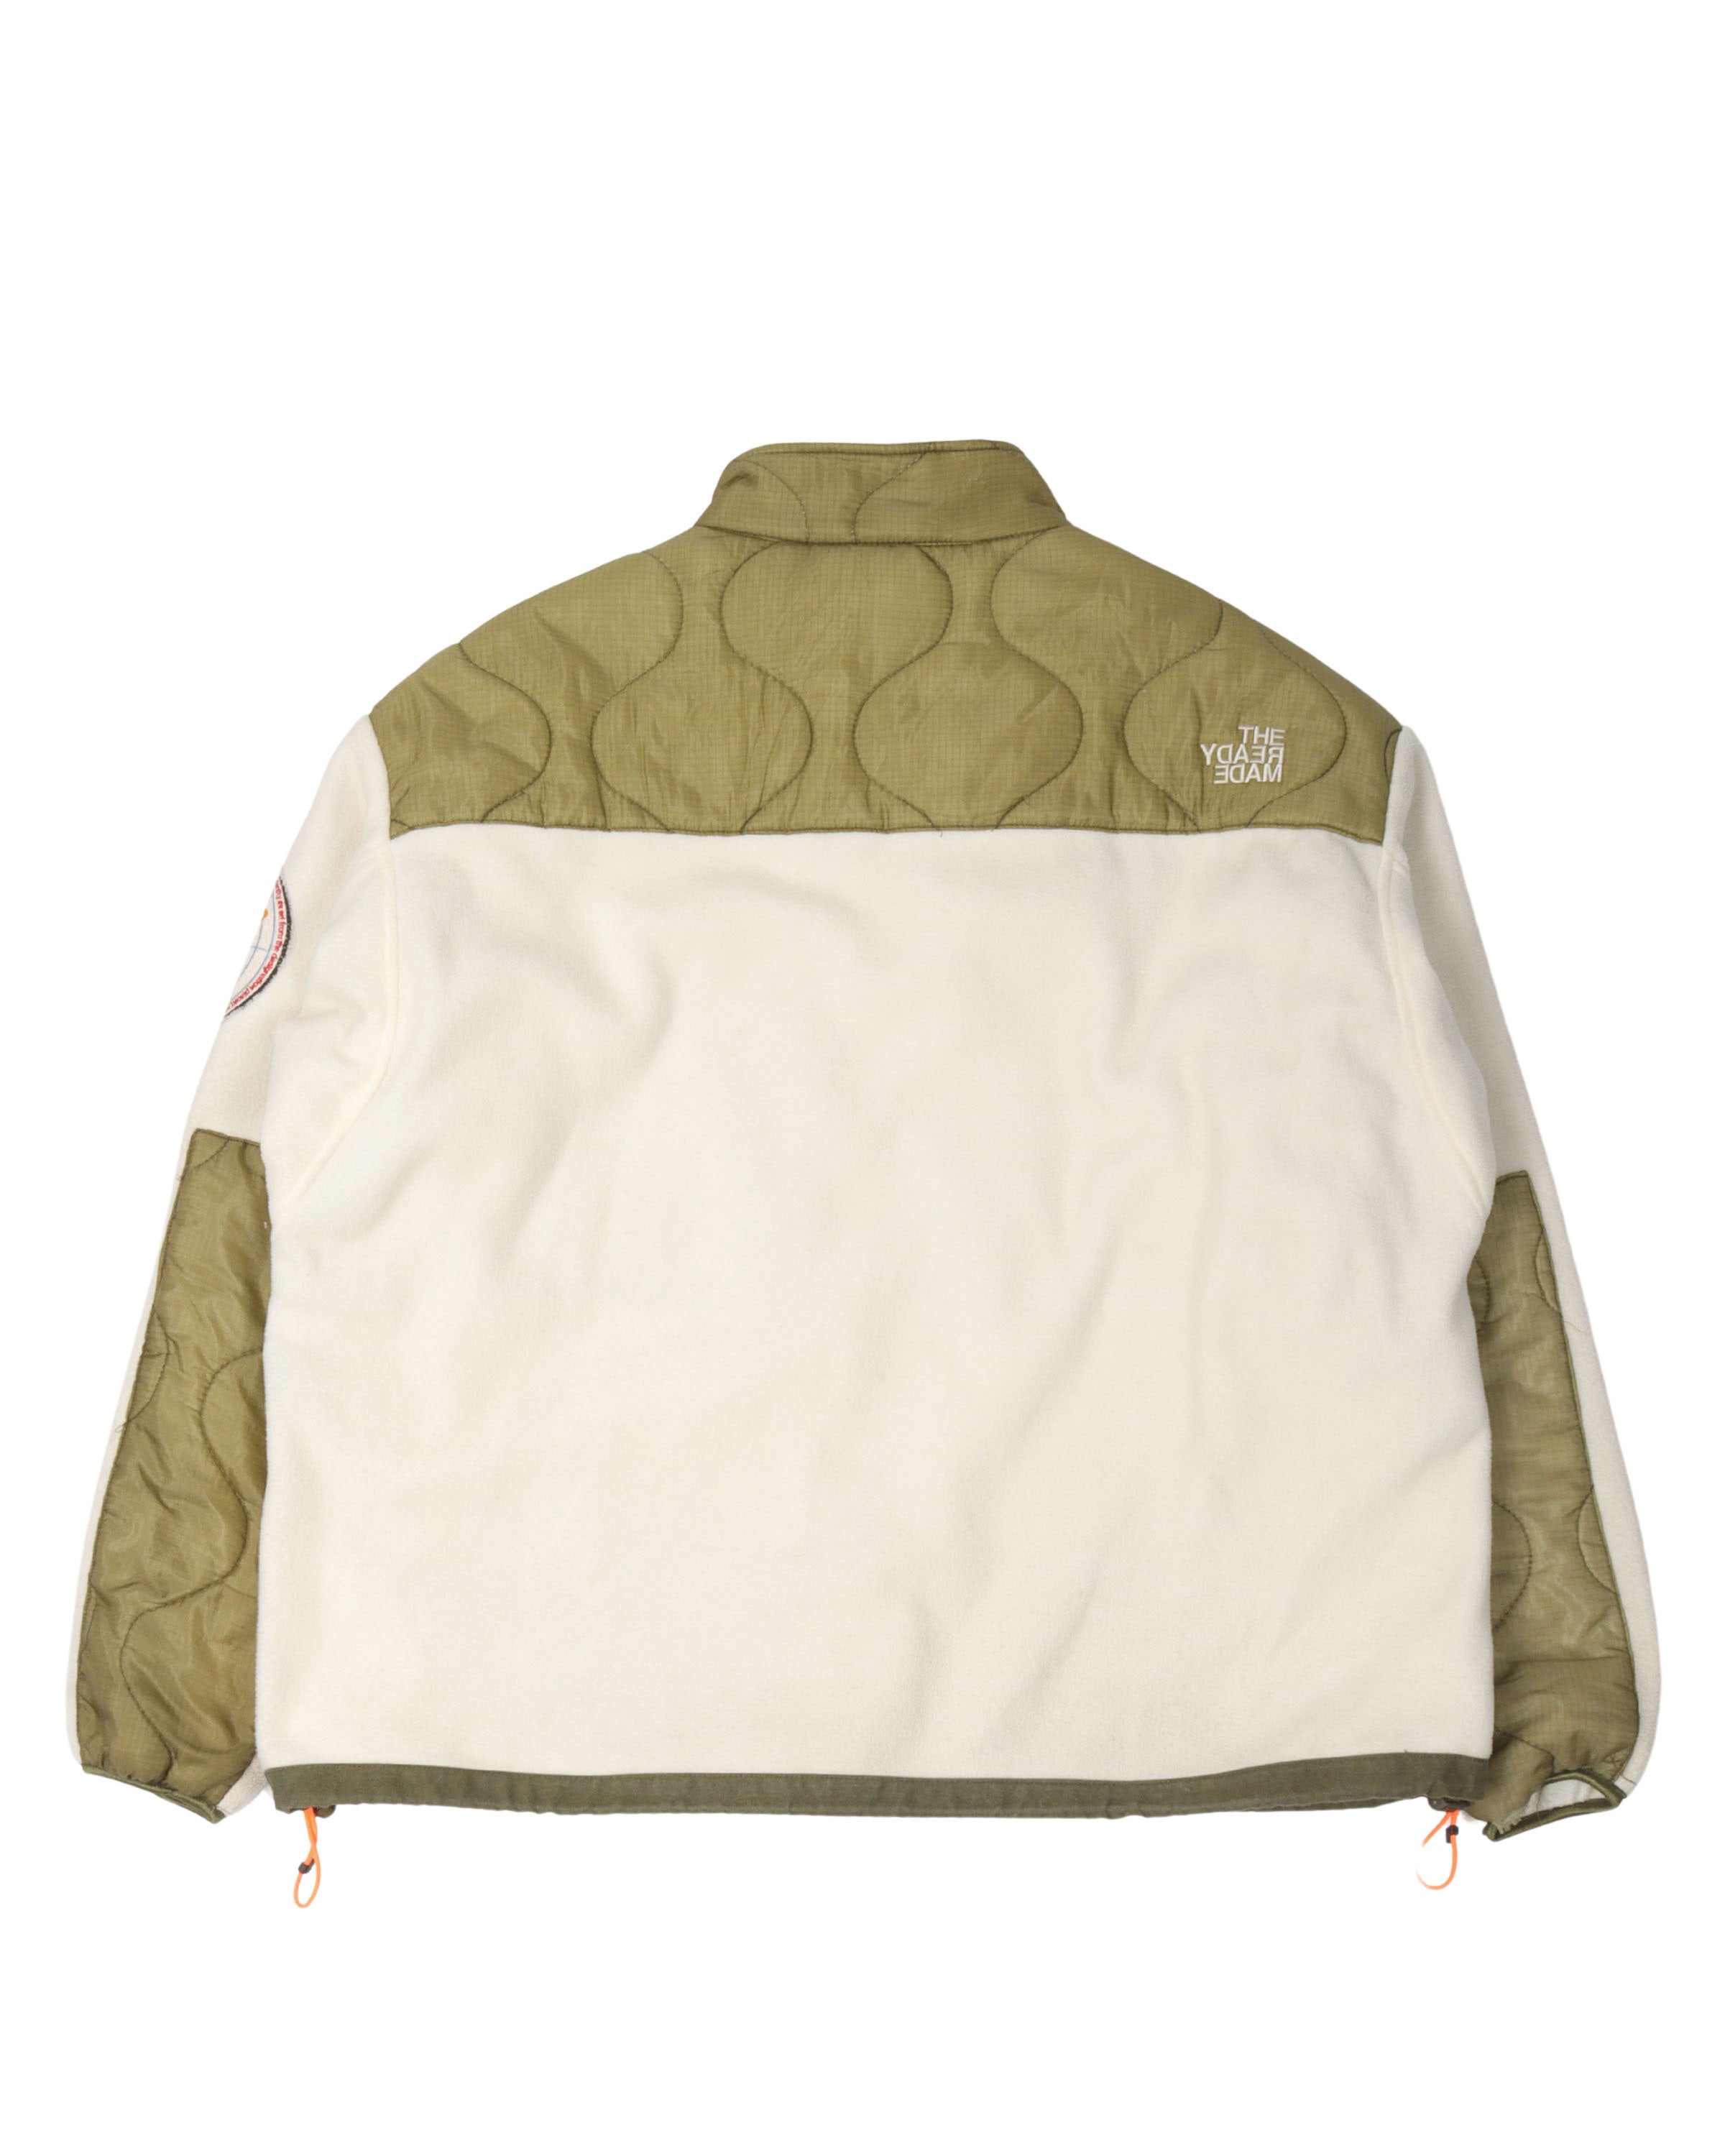 Reconstructed Denali Fleece Jacket